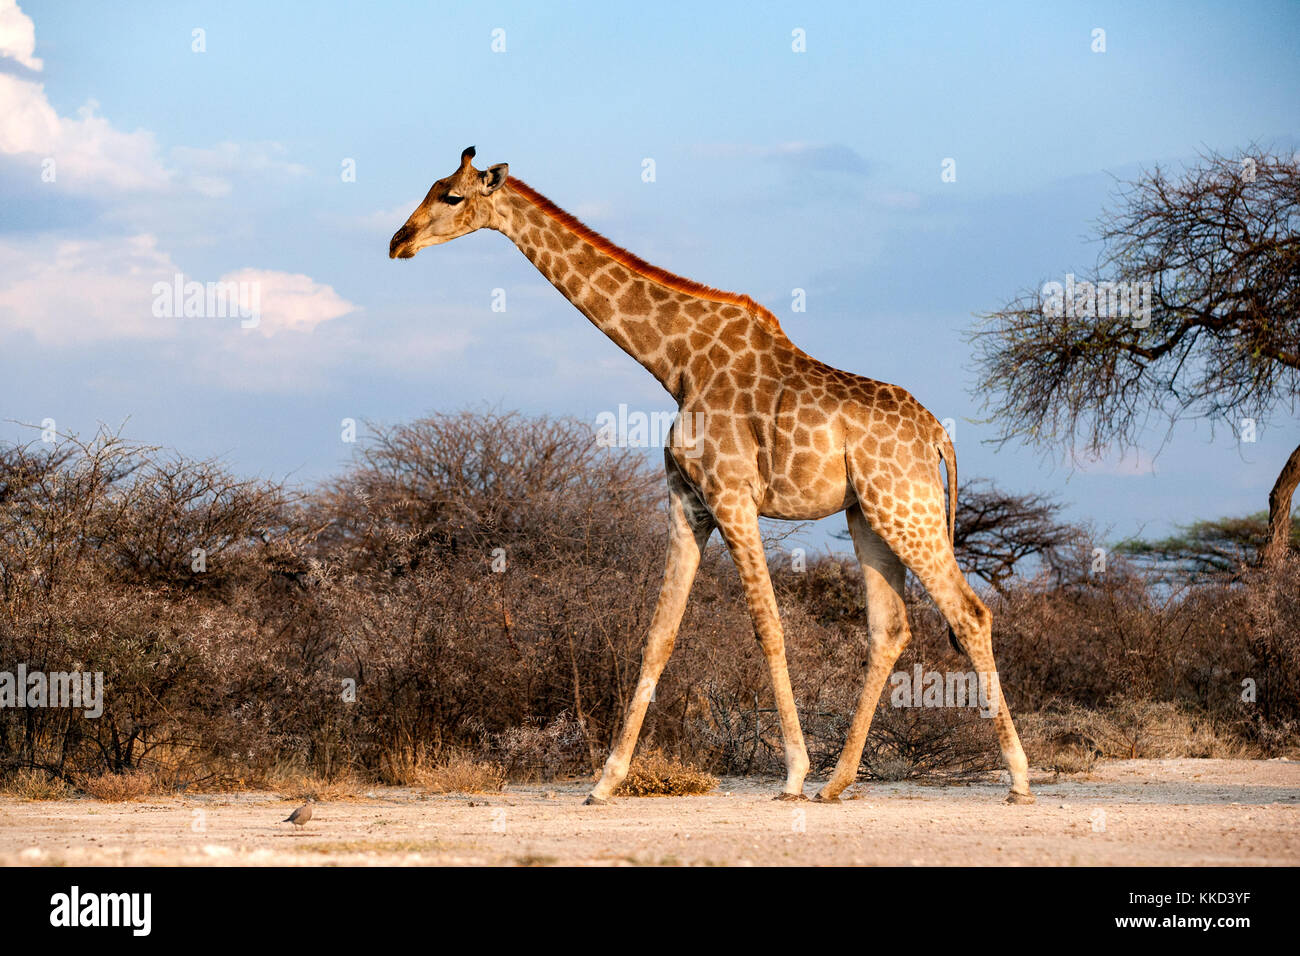 Onkolo girafe à cacher, onguma game reserve, la Namibie, l'Afrique Banque D'Images